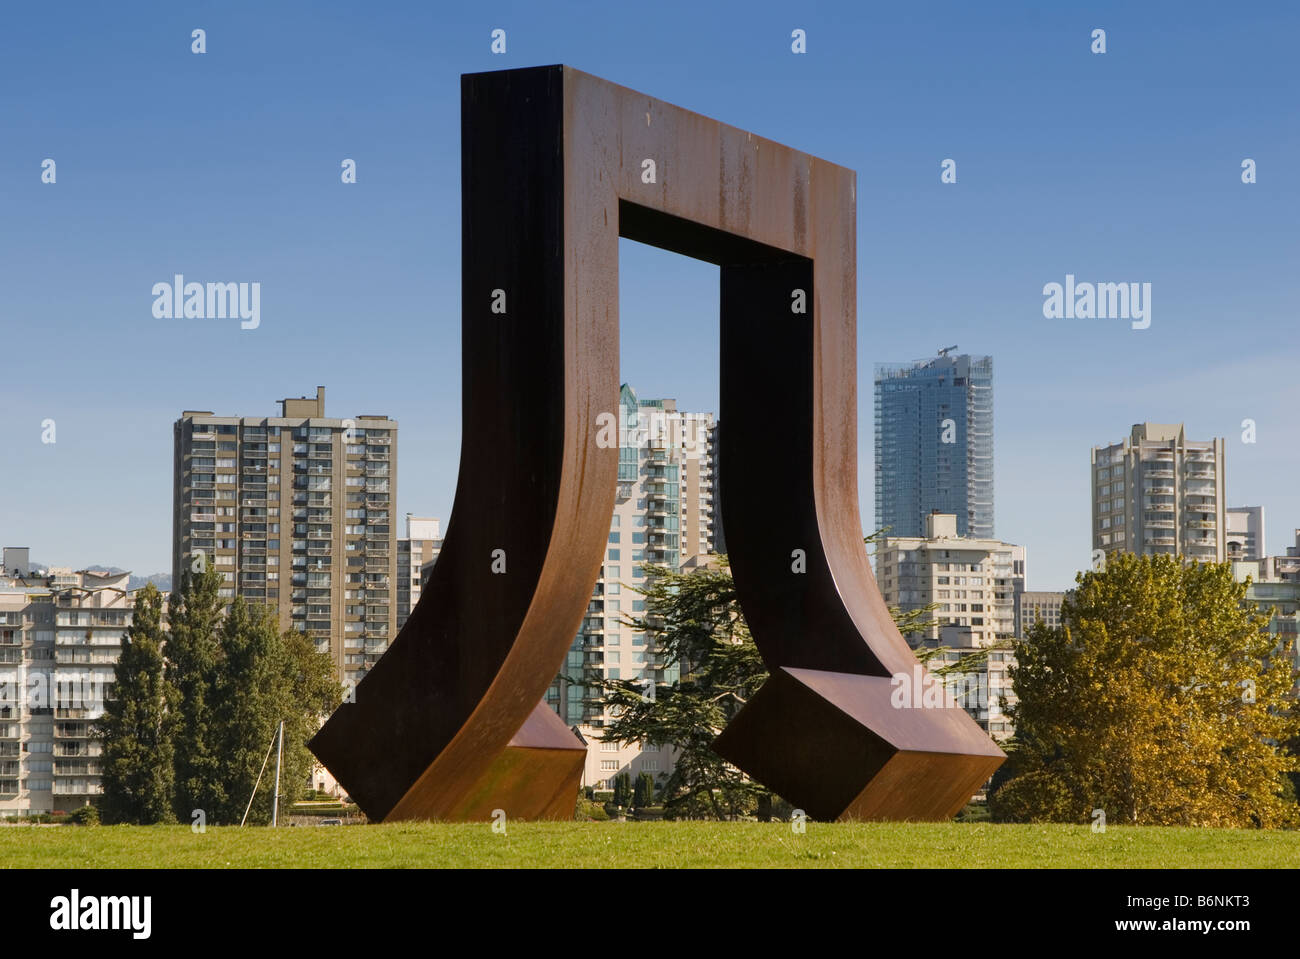 L'art public dans la région de Park, Vancouver, British Columbia, Canada Banque D'Images